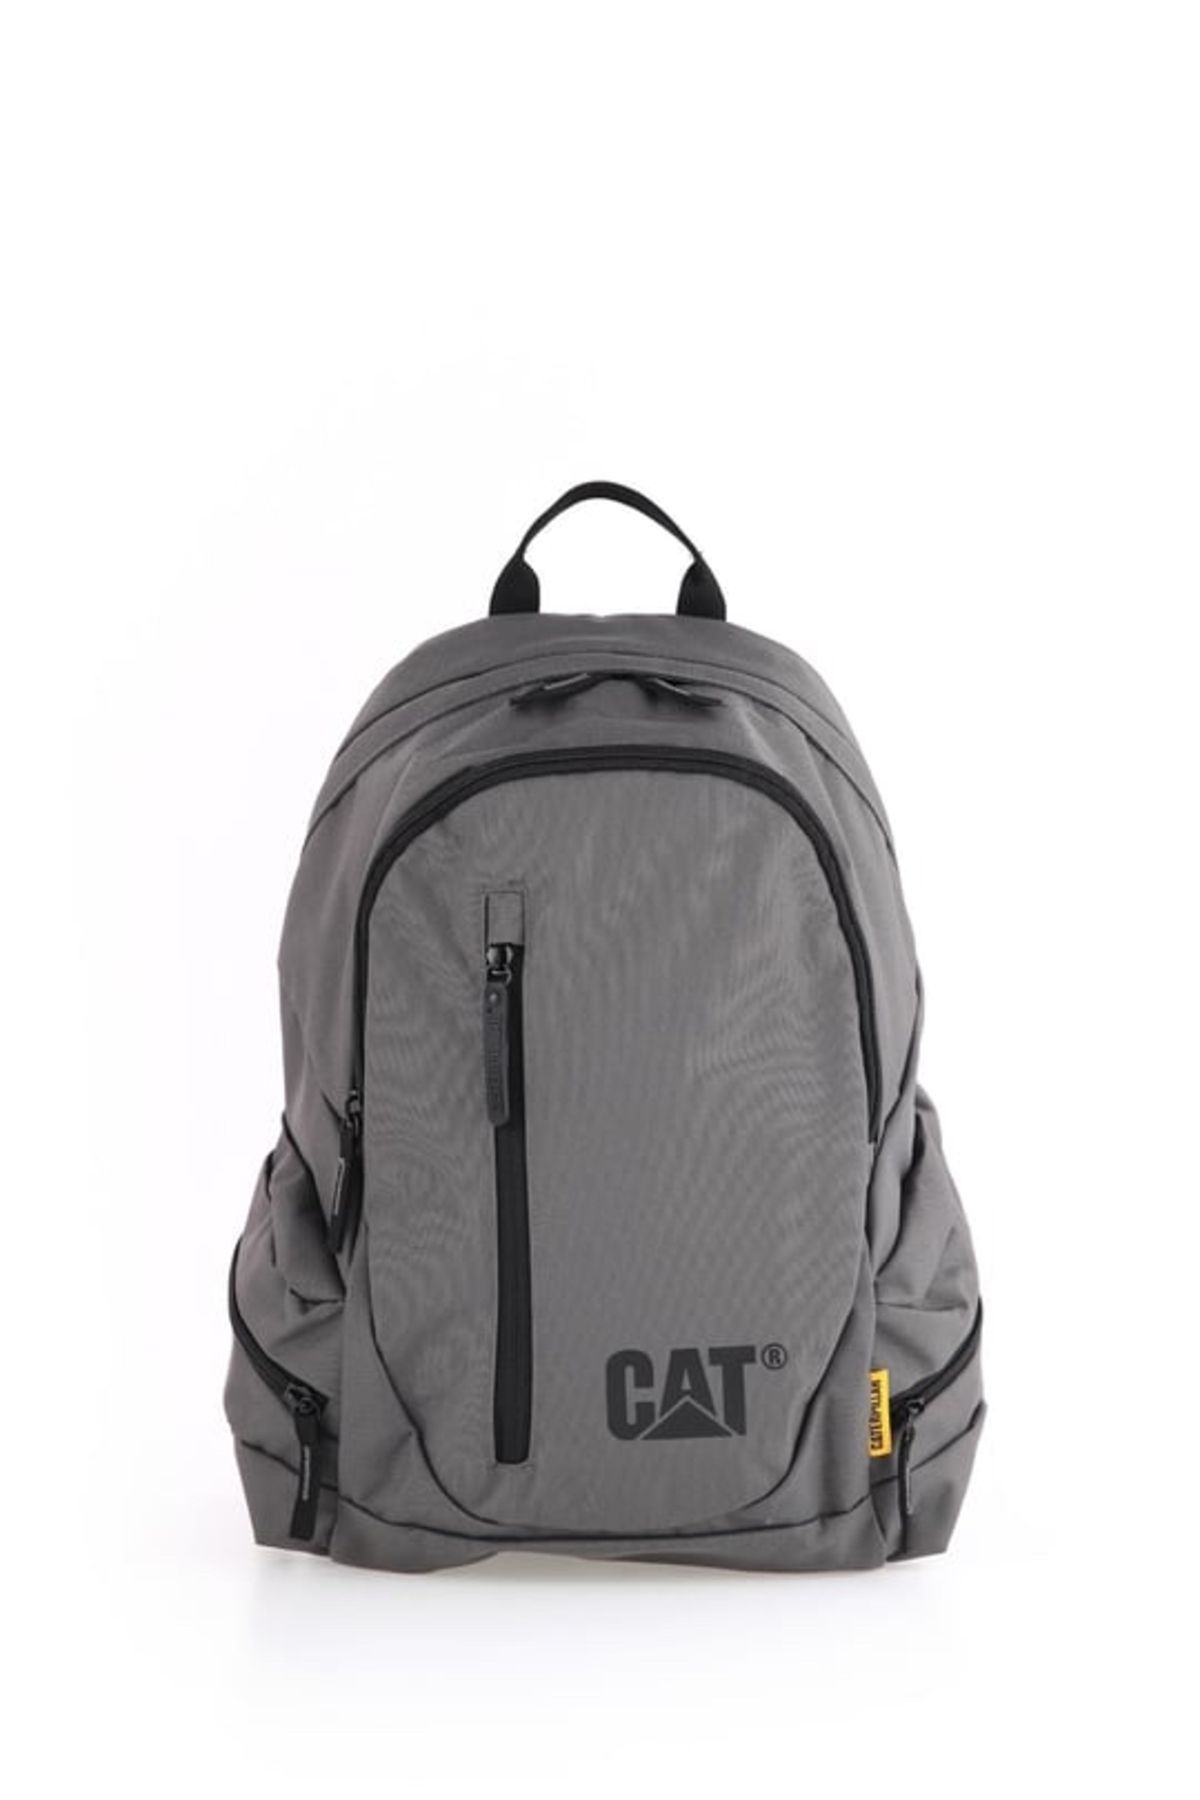 Cat Backpack Gri Unisex Sırt Çantası 83541-483